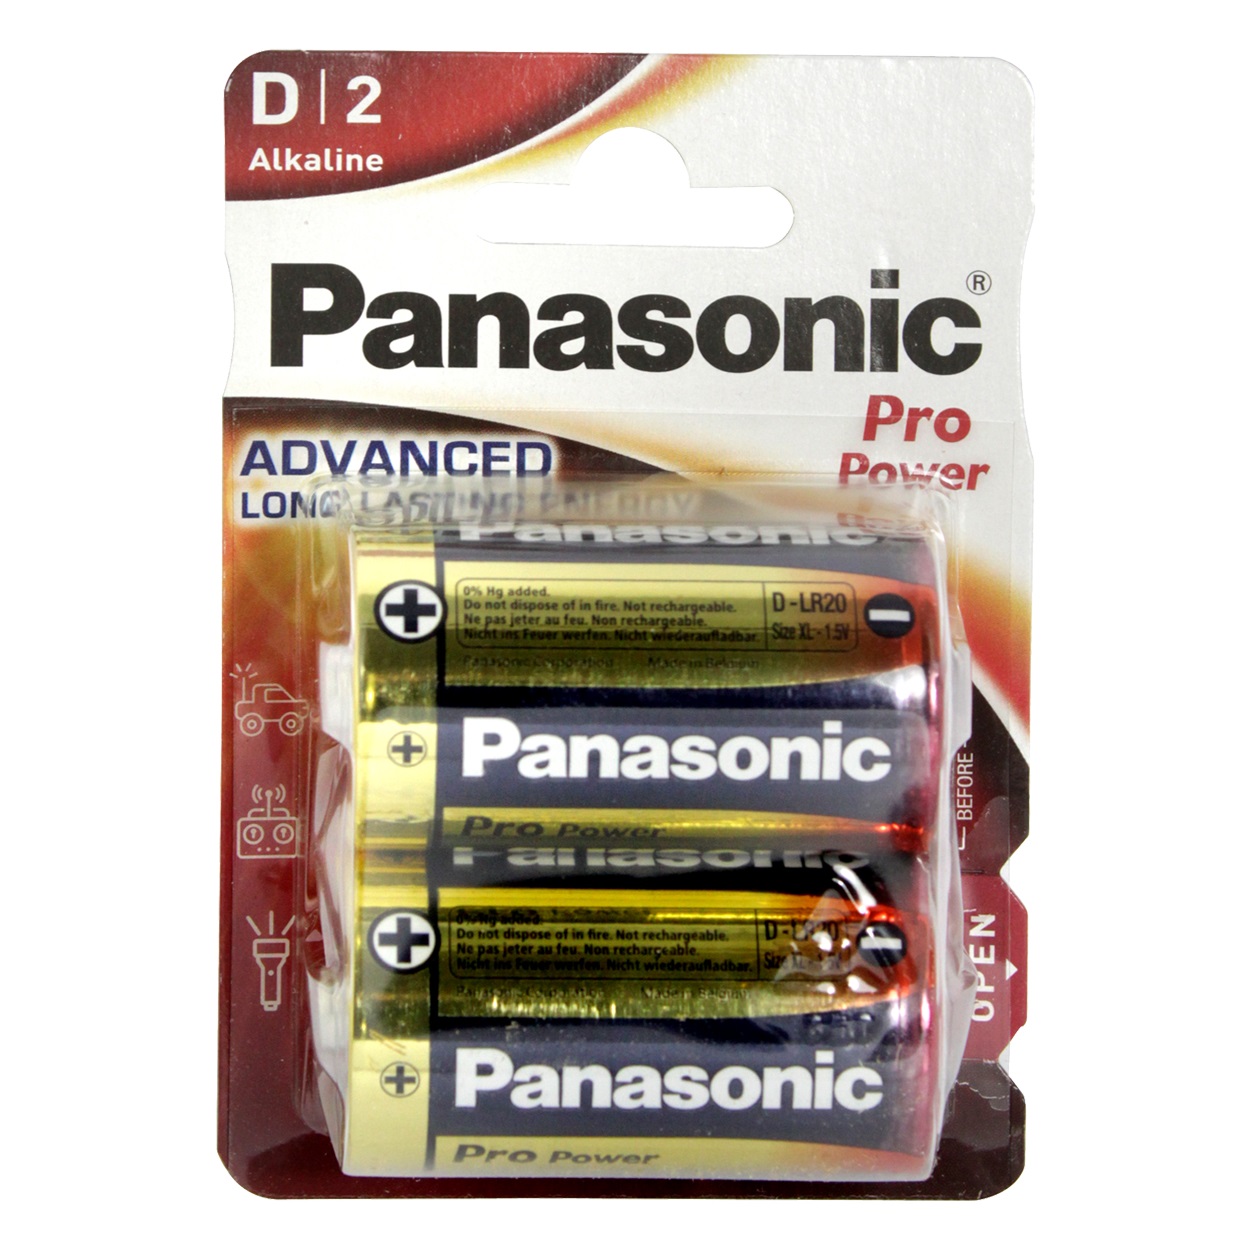 PANASONIC - 2 Piles LR20 D Pro Power - Lot de 2 piles LR20 D Panasonic Pro  Power Pile conçue pour des  - Livraison gratuite dès 120€